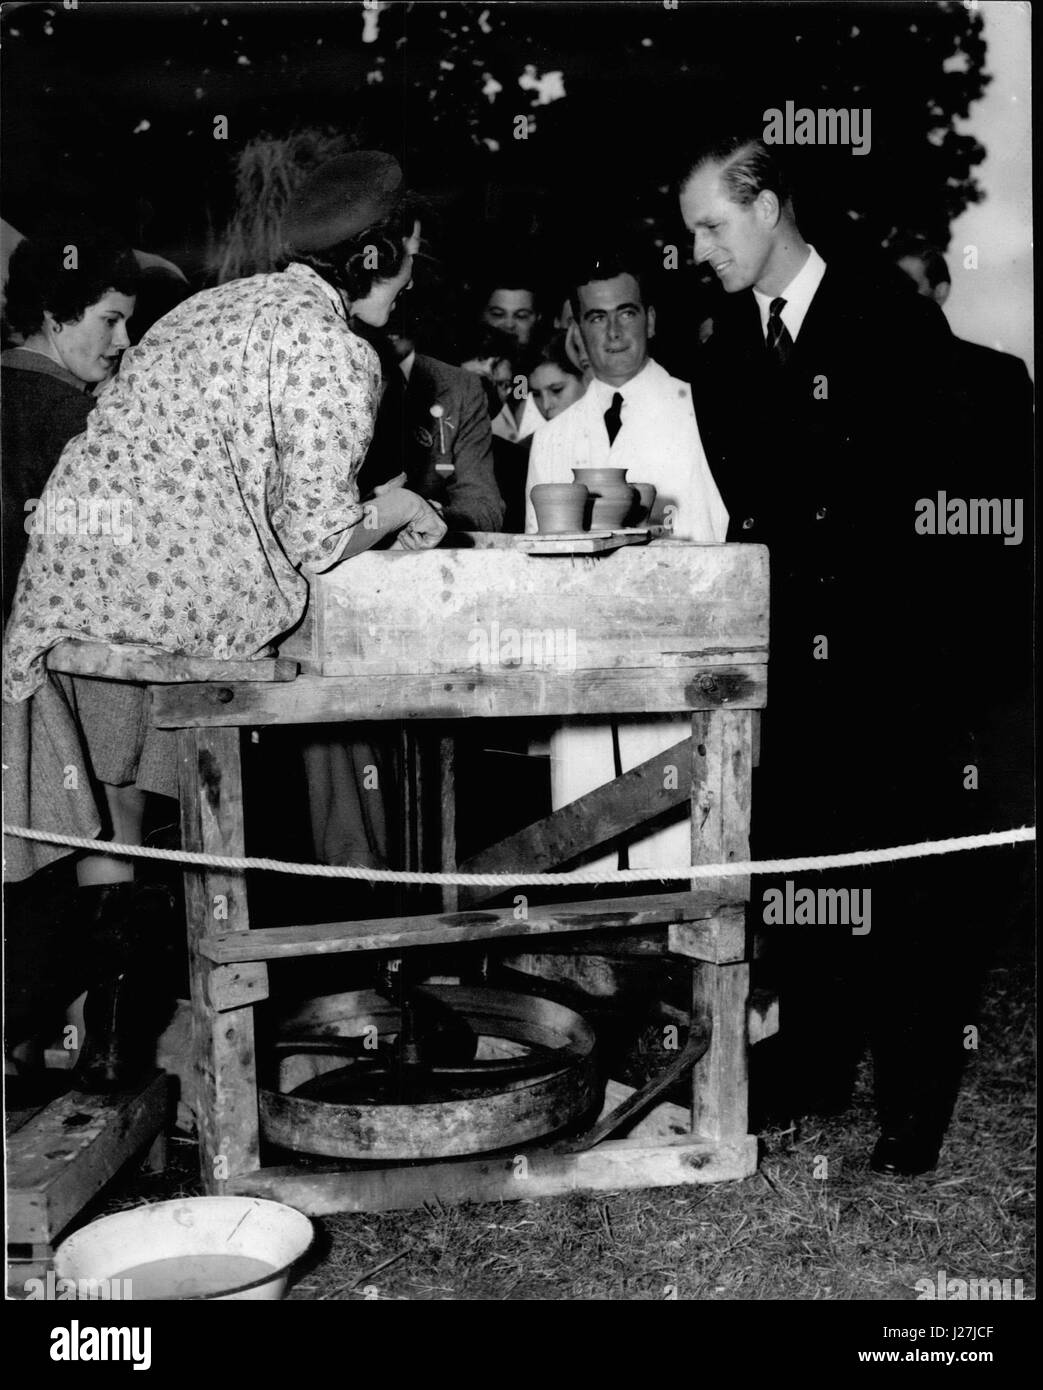 Ottobre 10, 1953 - ''TENERLO IN CORSO'', dice il duca. Con un sorriso, il Duca di Edimburgo dice ''mantenere va' a 23-anno-vecchio ENGLEFIELD DAPHNE DI WESTCOURT FARM, Bray come ha dimostrato la sua abilità da POTTERS DELLA RUOTA IN CORRISPONDENZA DEL ROYAL EST BERKS associazione agricola di un centesimo spettacolo al MOOR FARM, HOLYPORT, BERKSHIRE, oggi 24 Ottobre. (Credito Immagine: © Keystone Press Agency/Keystone USA via ZUMAPRESS.com) Foto Stock